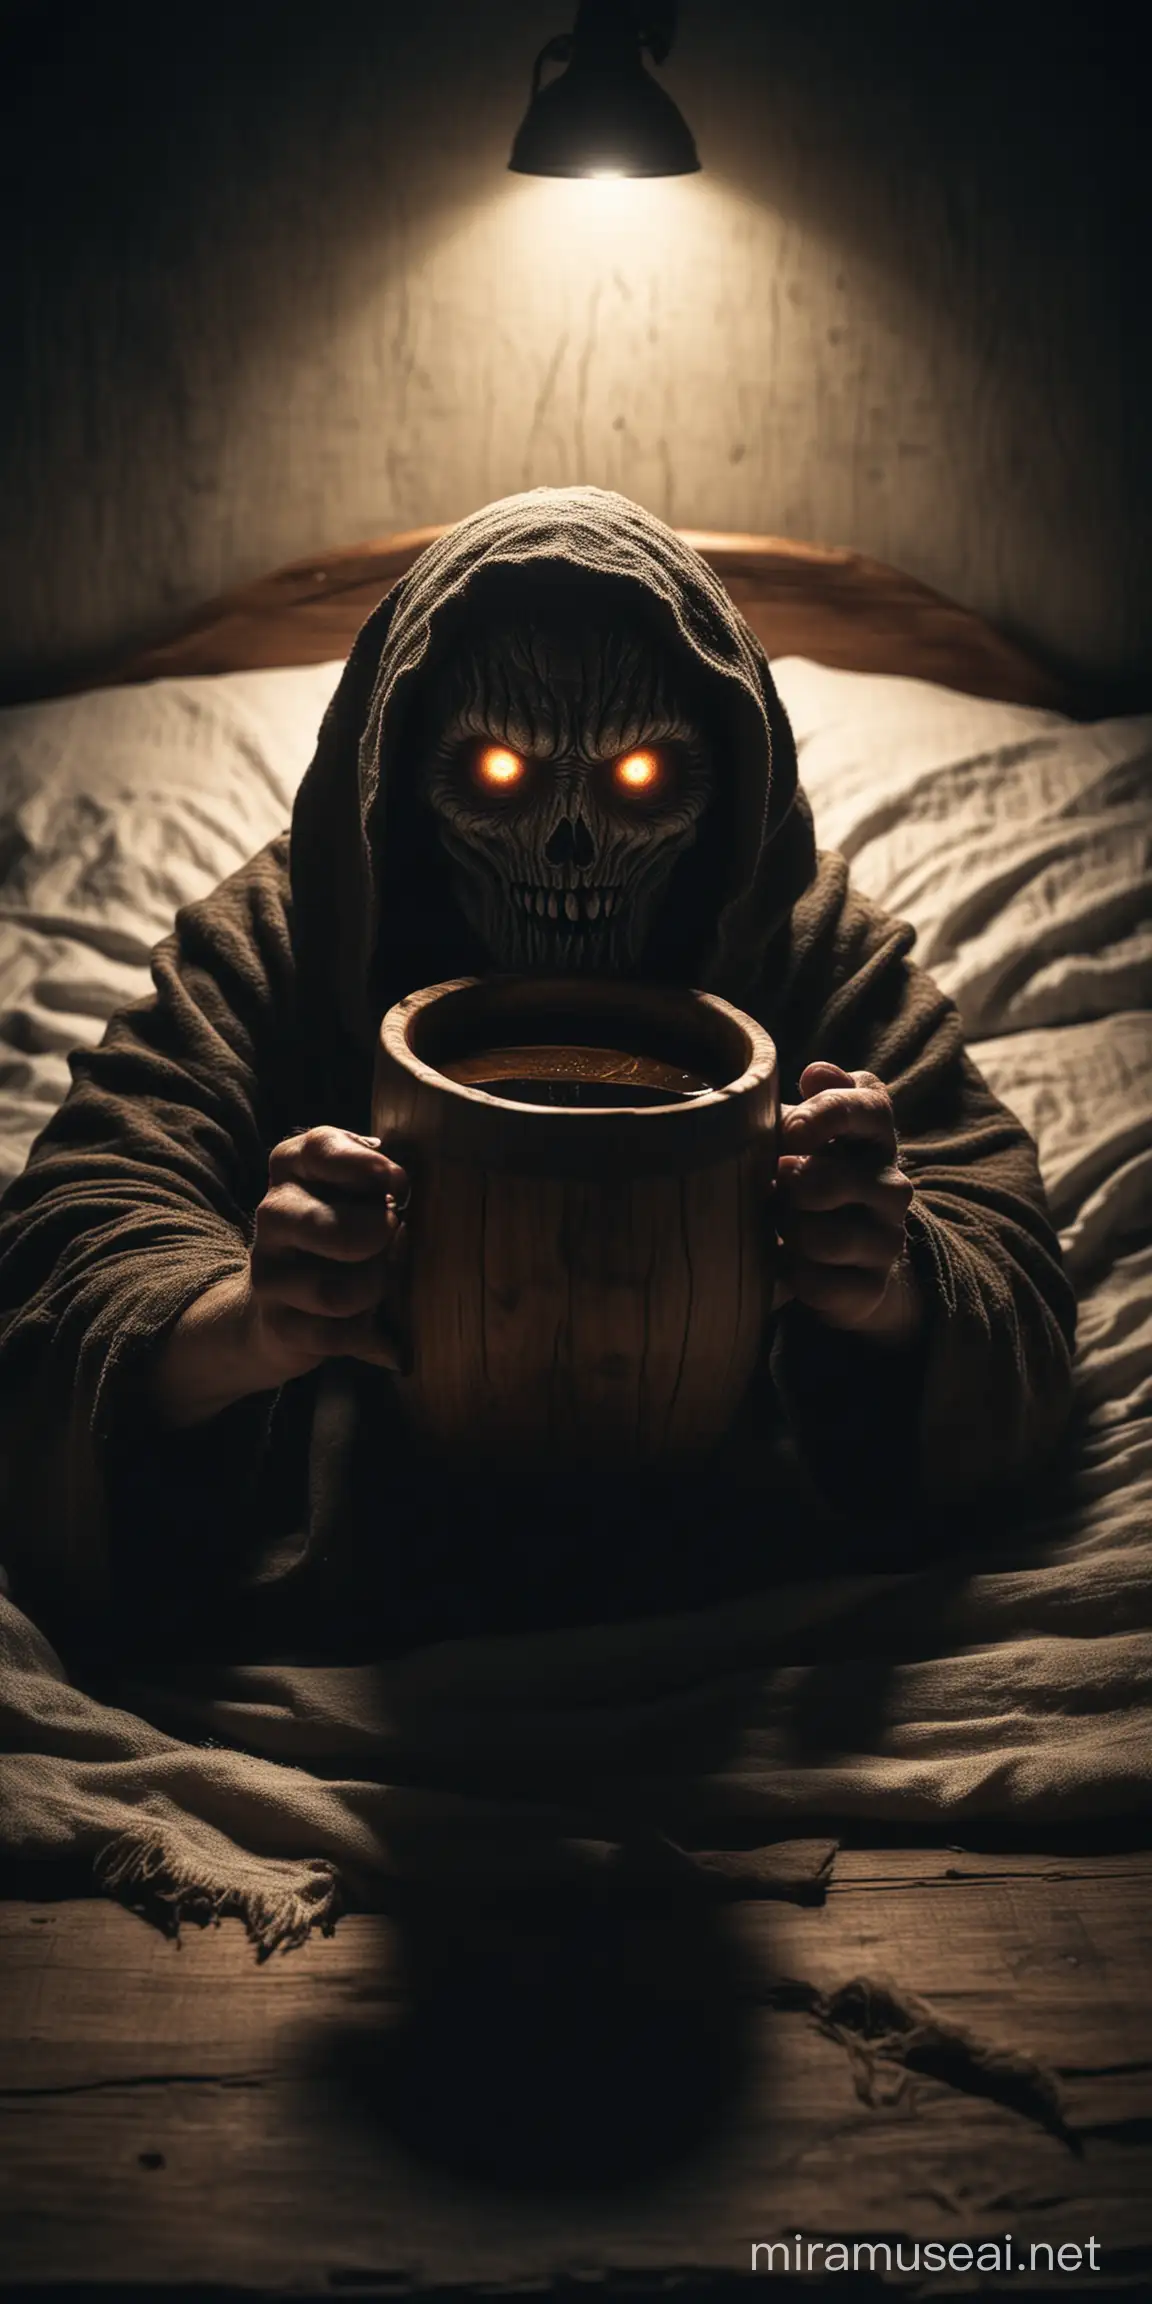 Eerie Monster Eyes Glow in Dark Room Offering Wooden Mug of Mead